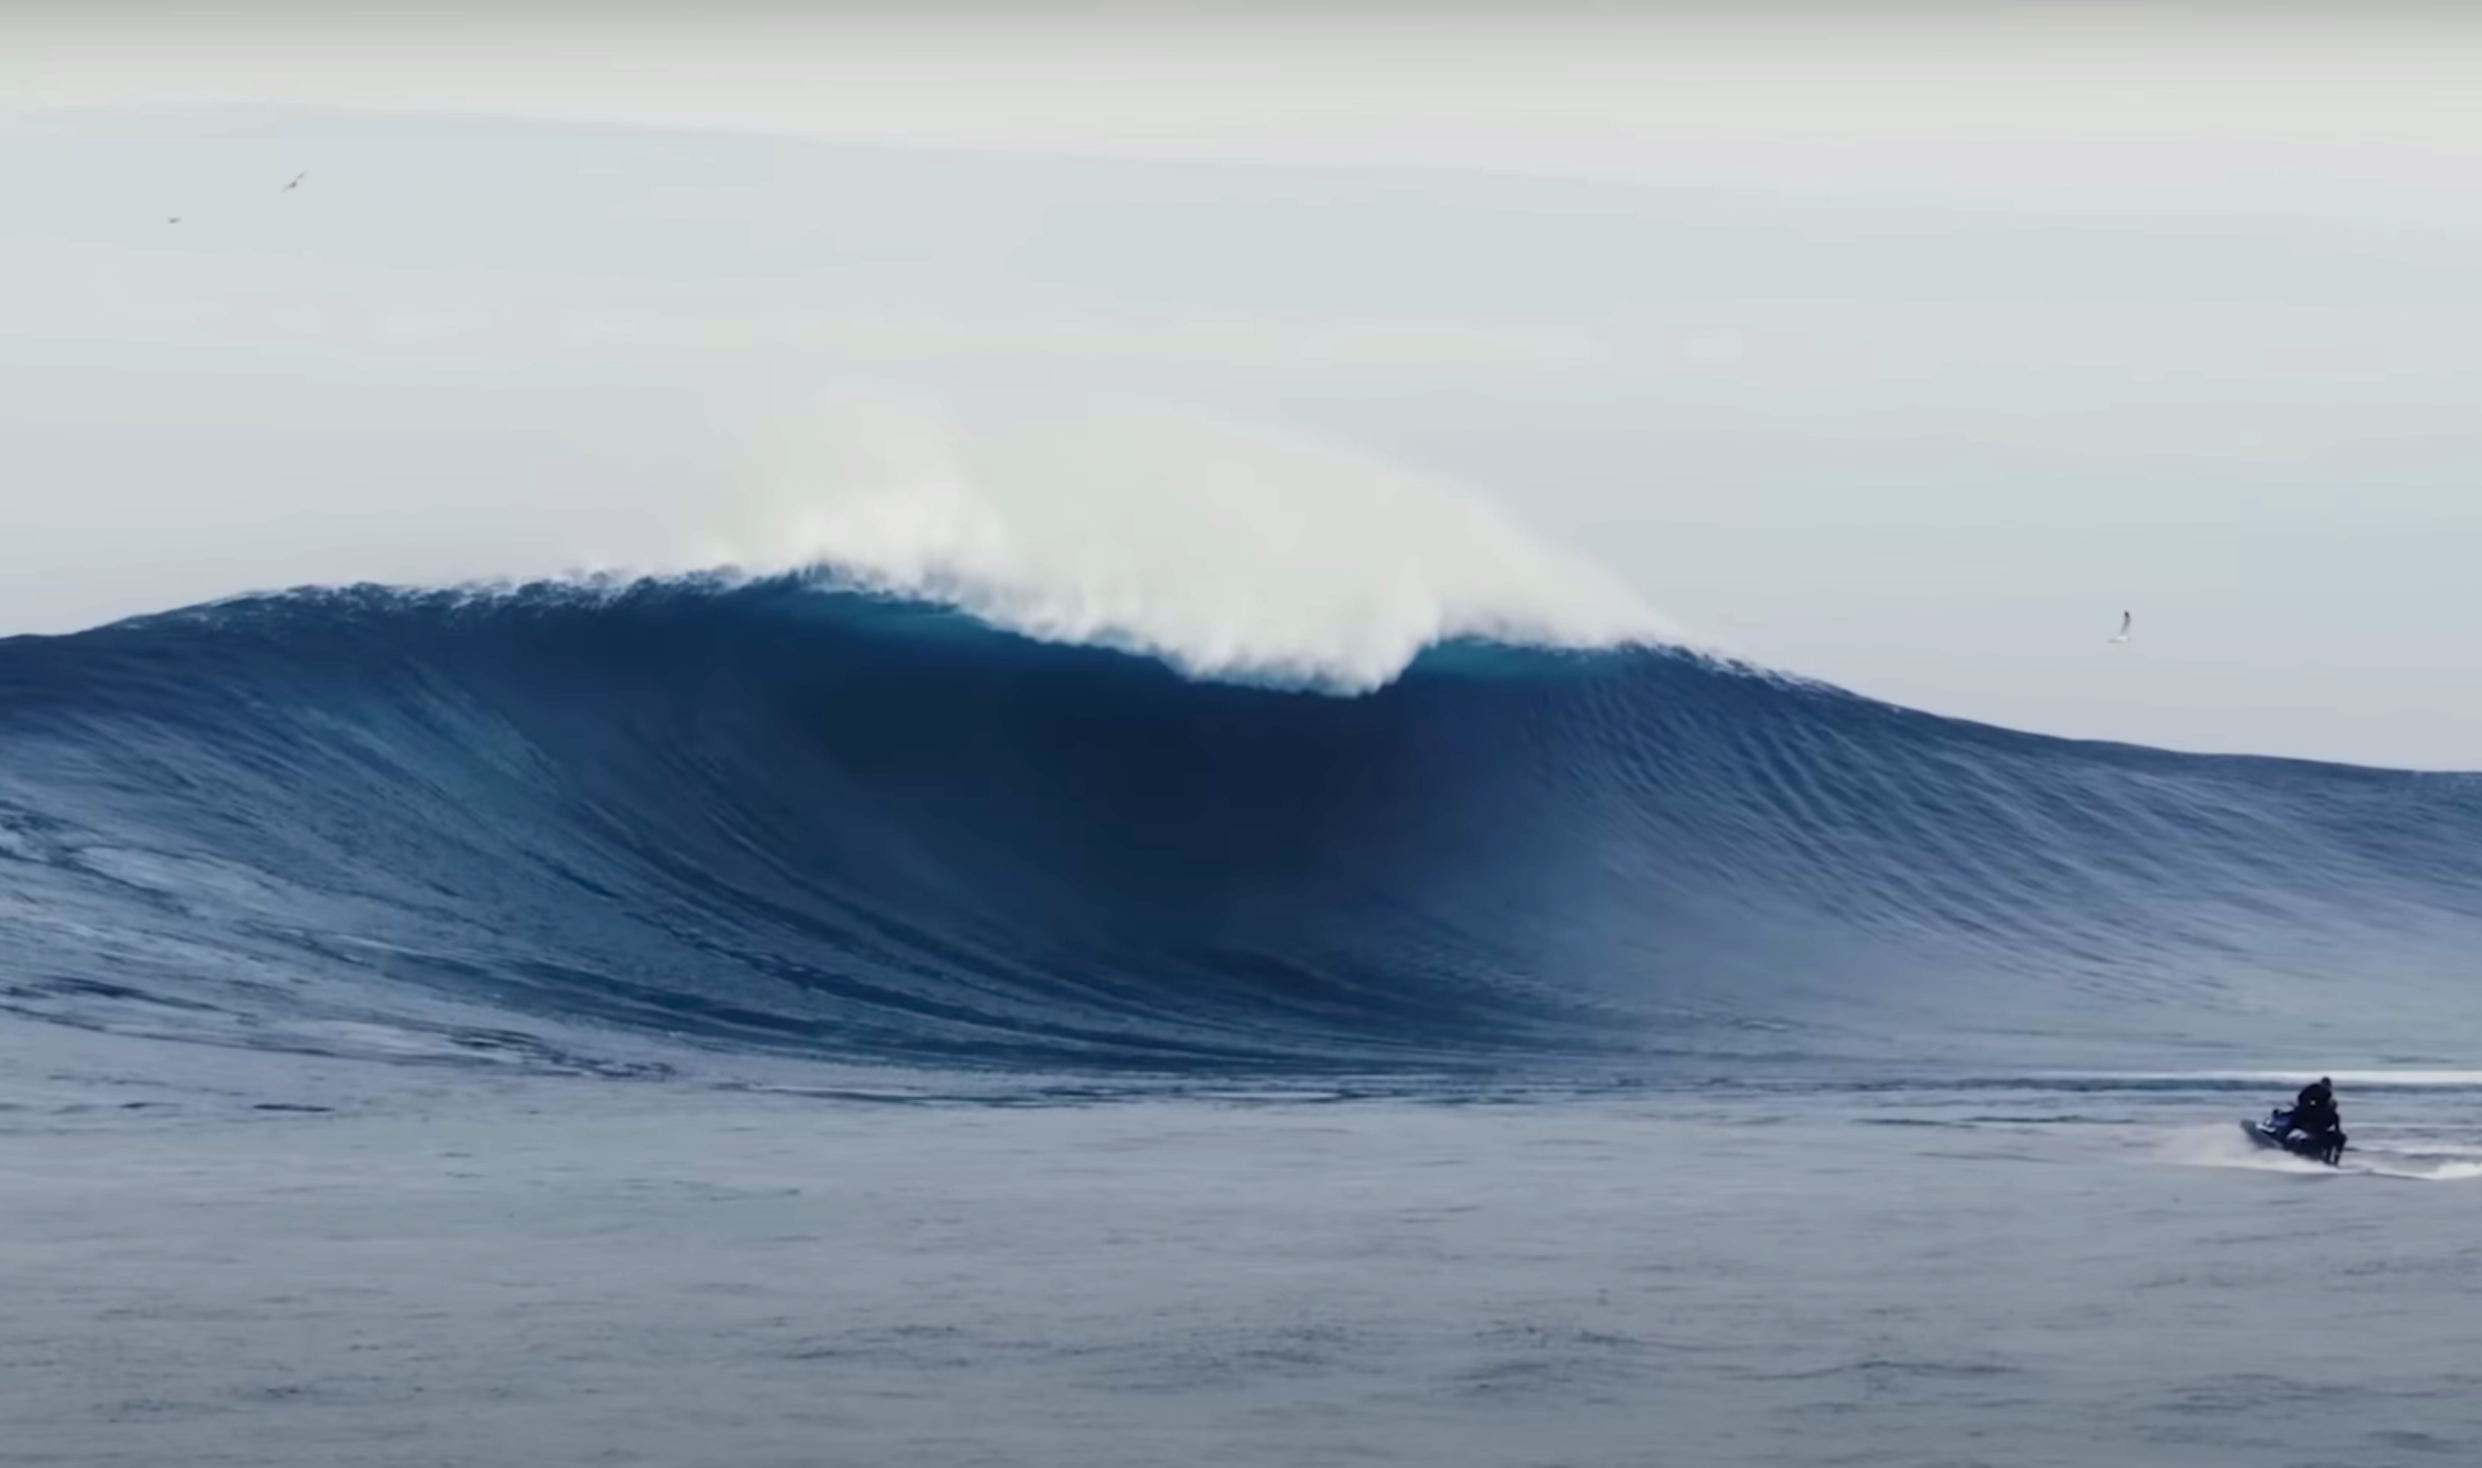 Pacific Ocean big wave surfing – 20 Foot Plus video